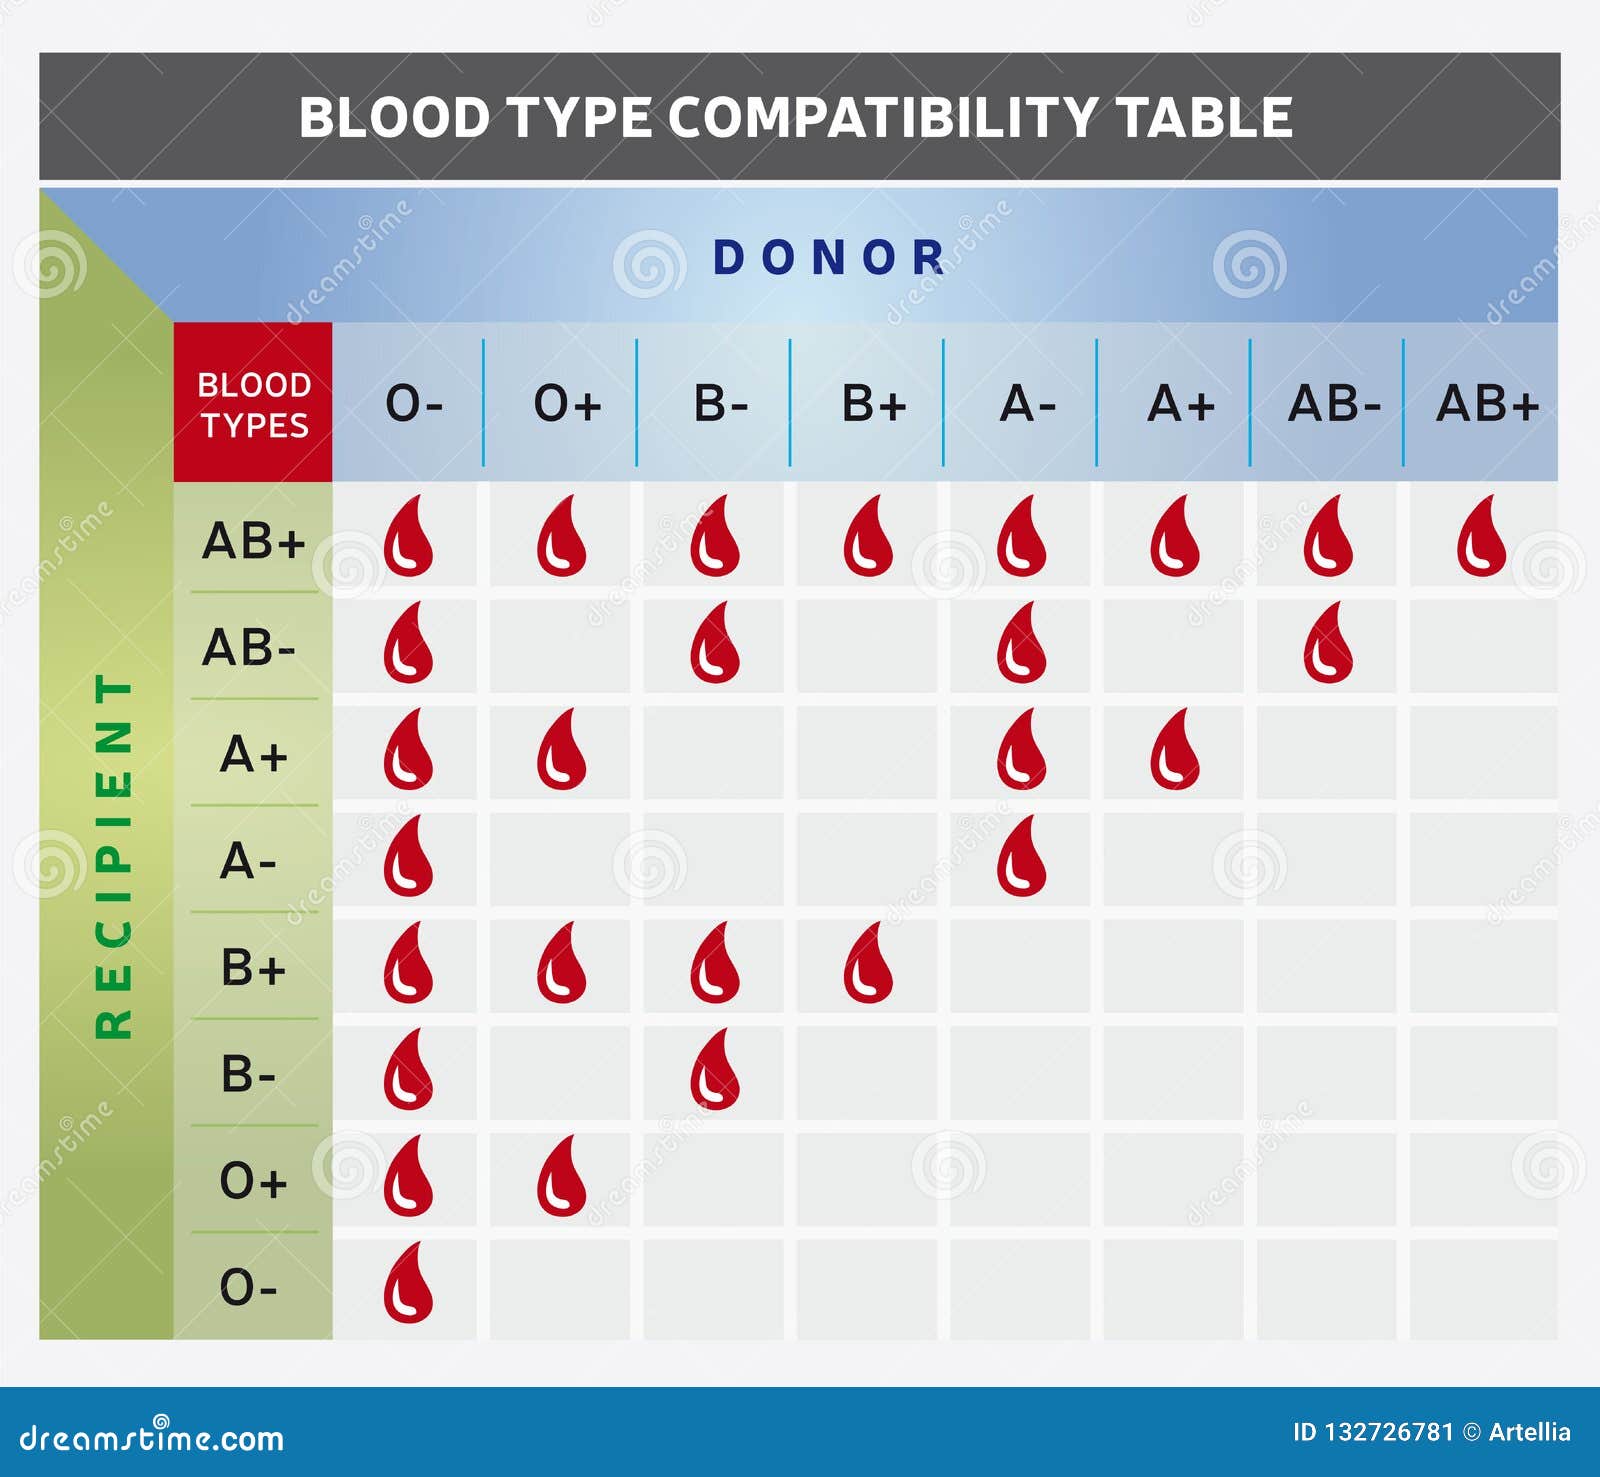 Blood Type 101 - BCBST News Center